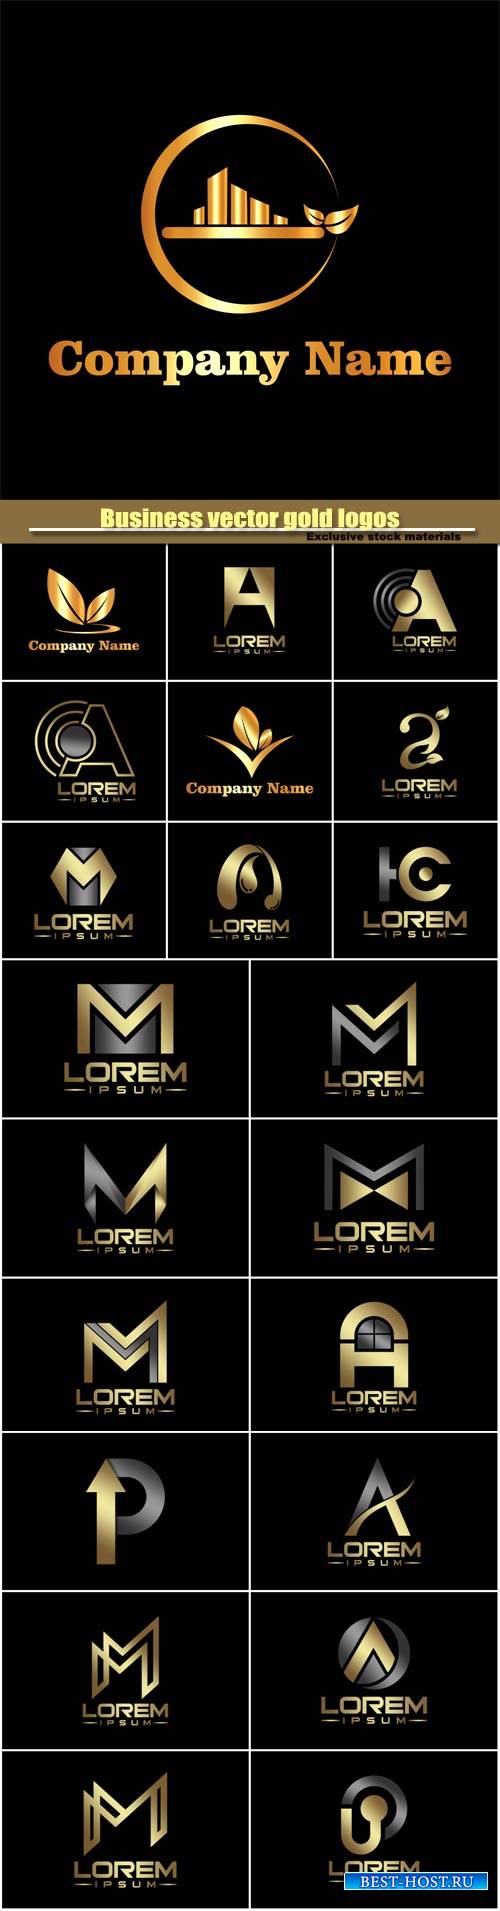 Business vector gold logos templates, creative figure icon